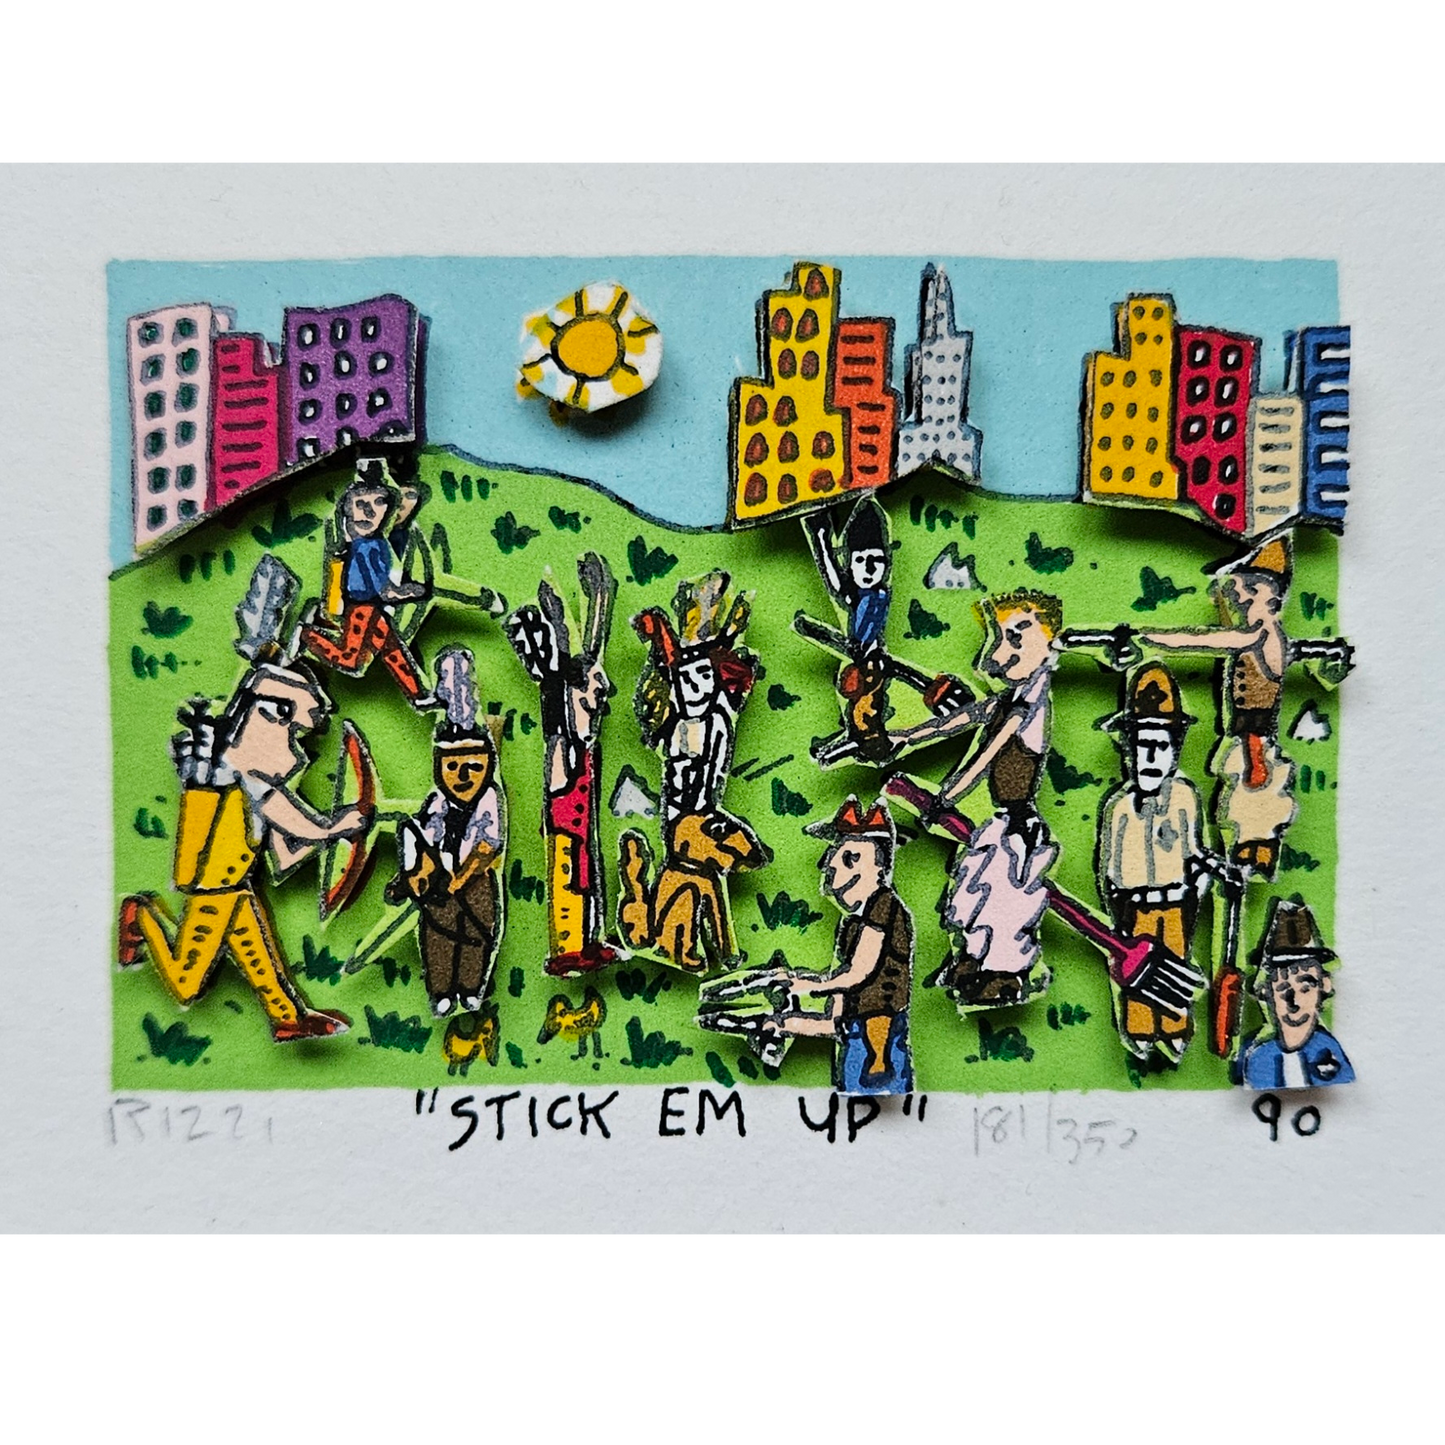 Stick 'Em Up (1990)